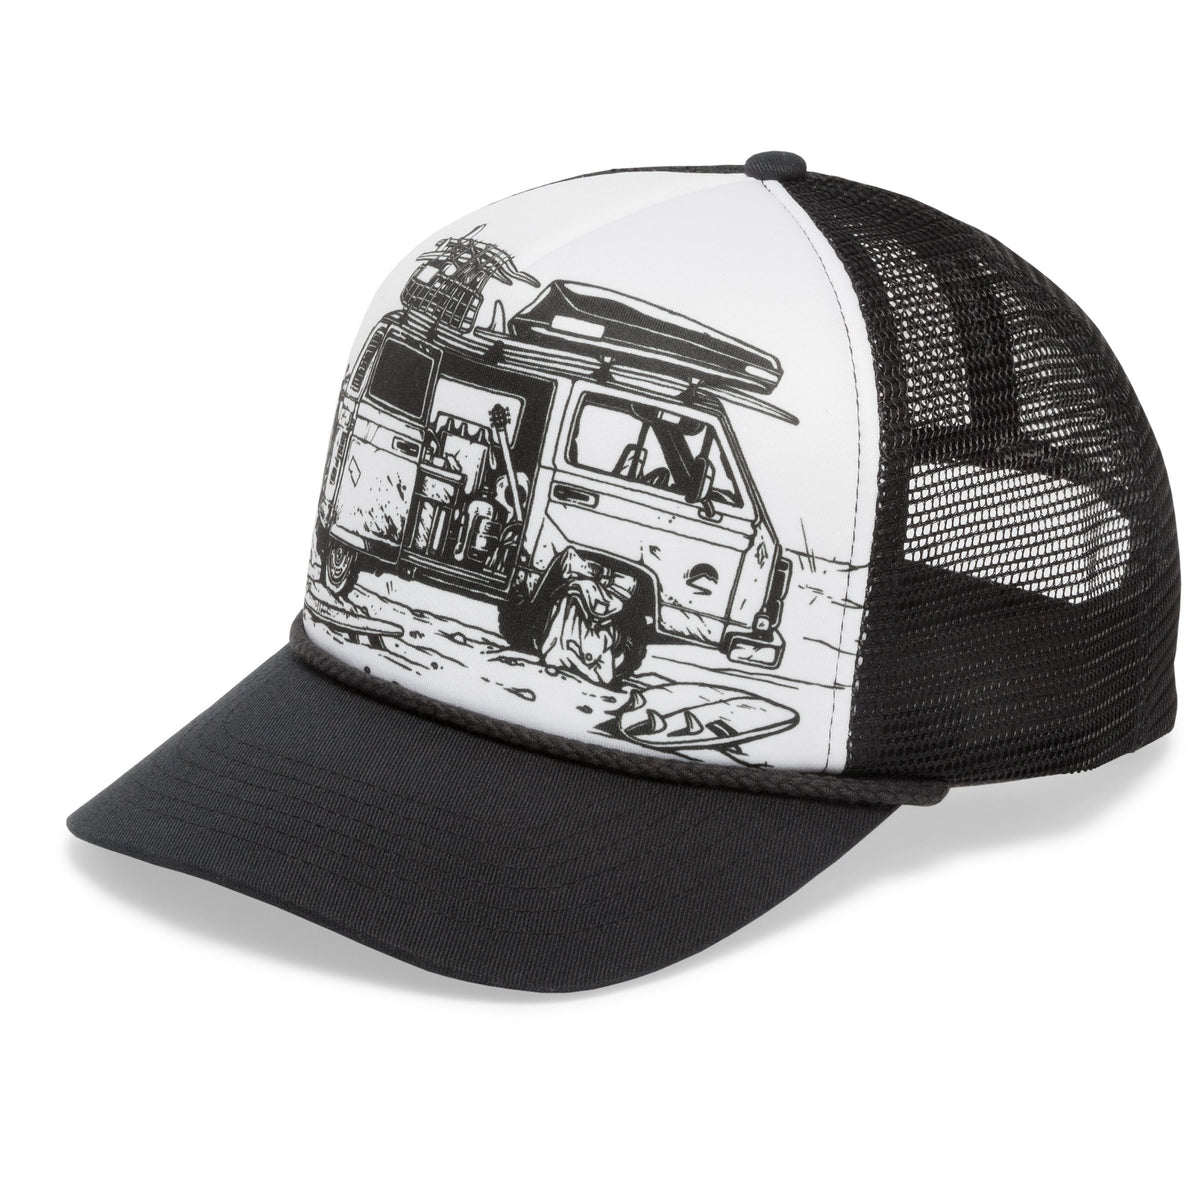 Artist Series Trucker Hat